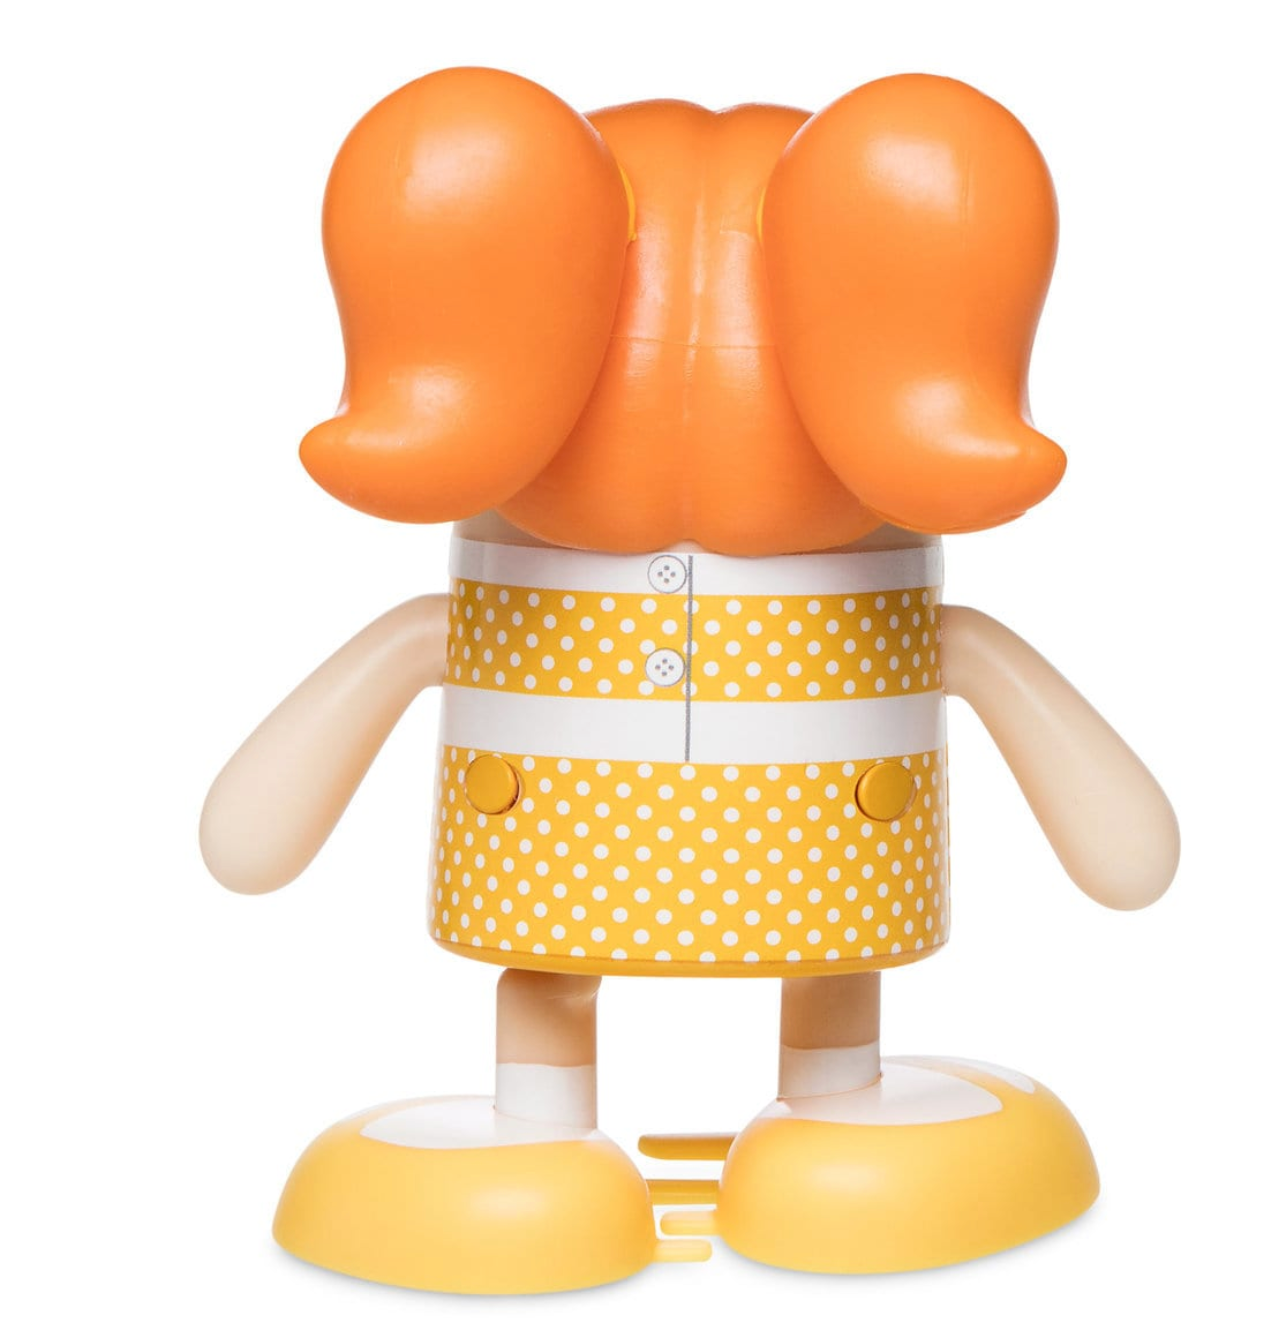 Disney Toy Story 4 Gabby Gabby Shufflerz Walking Figure New with Box